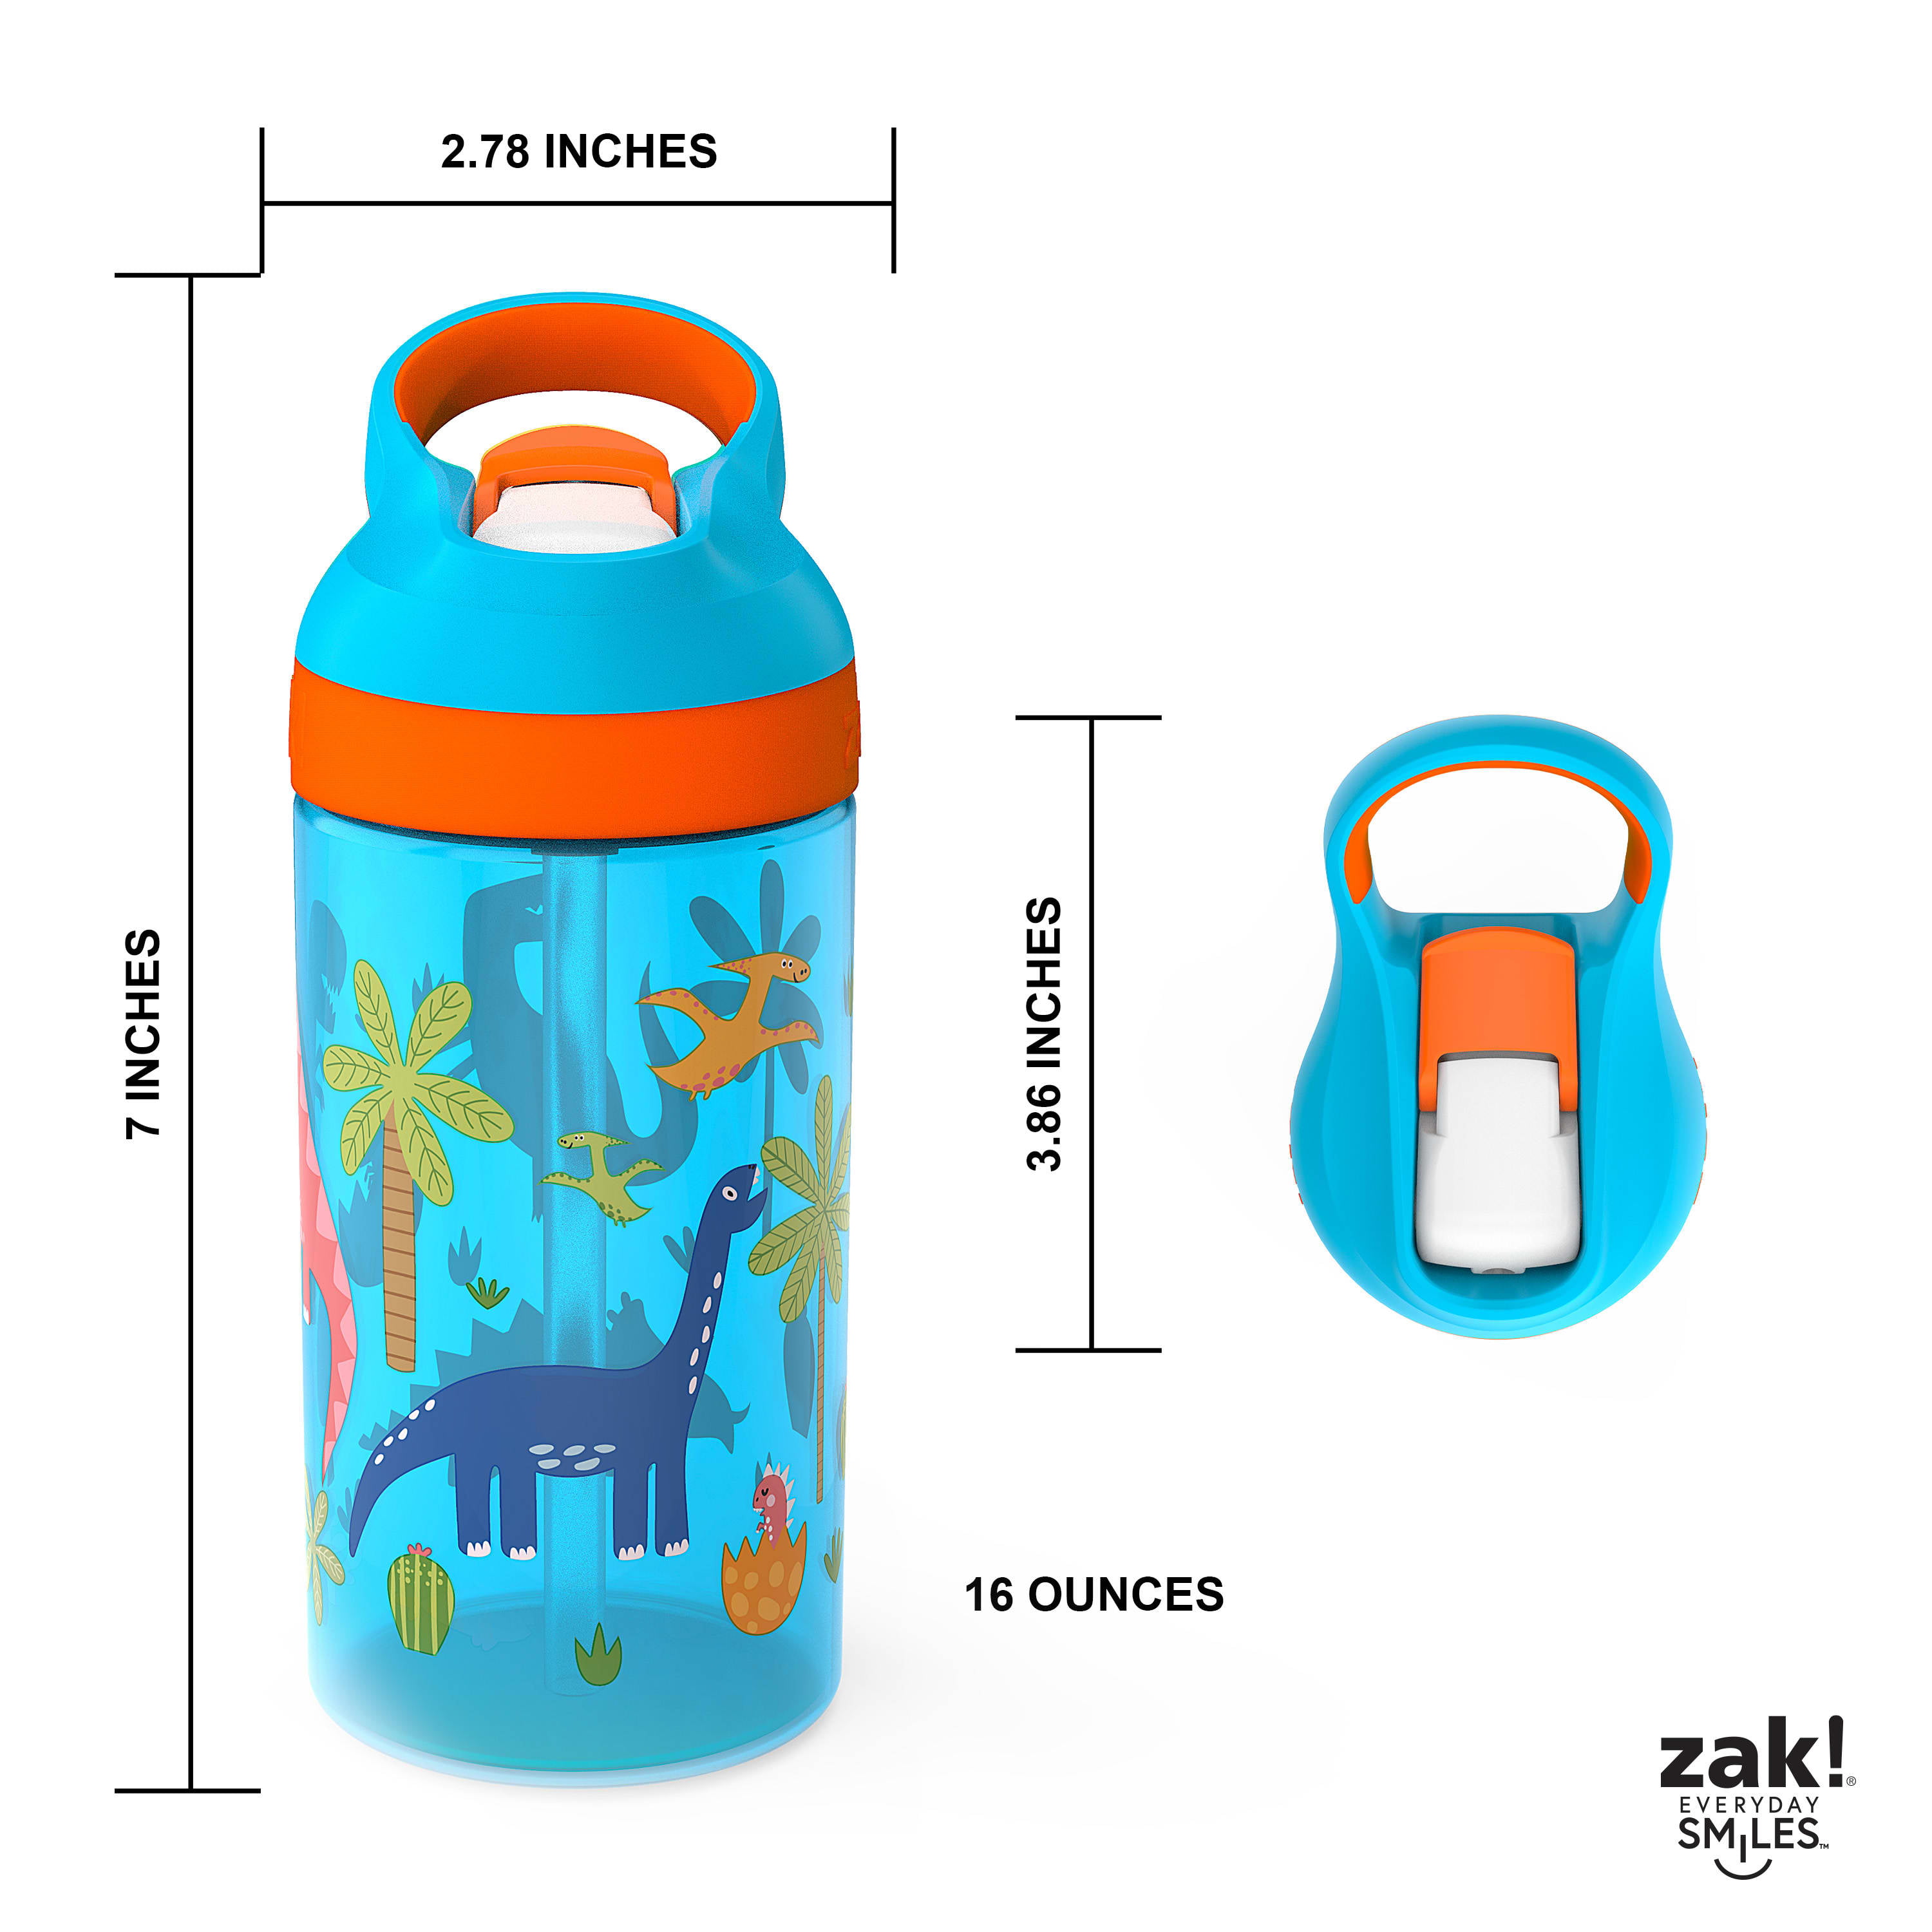 Zubebe Pack of 36 Plastic Water Bottles Bulk Christian Charity Donation  Supplies for Kids 18 oz Reus…See more Zubebe Pack of 36 Plastic Water  Bottles